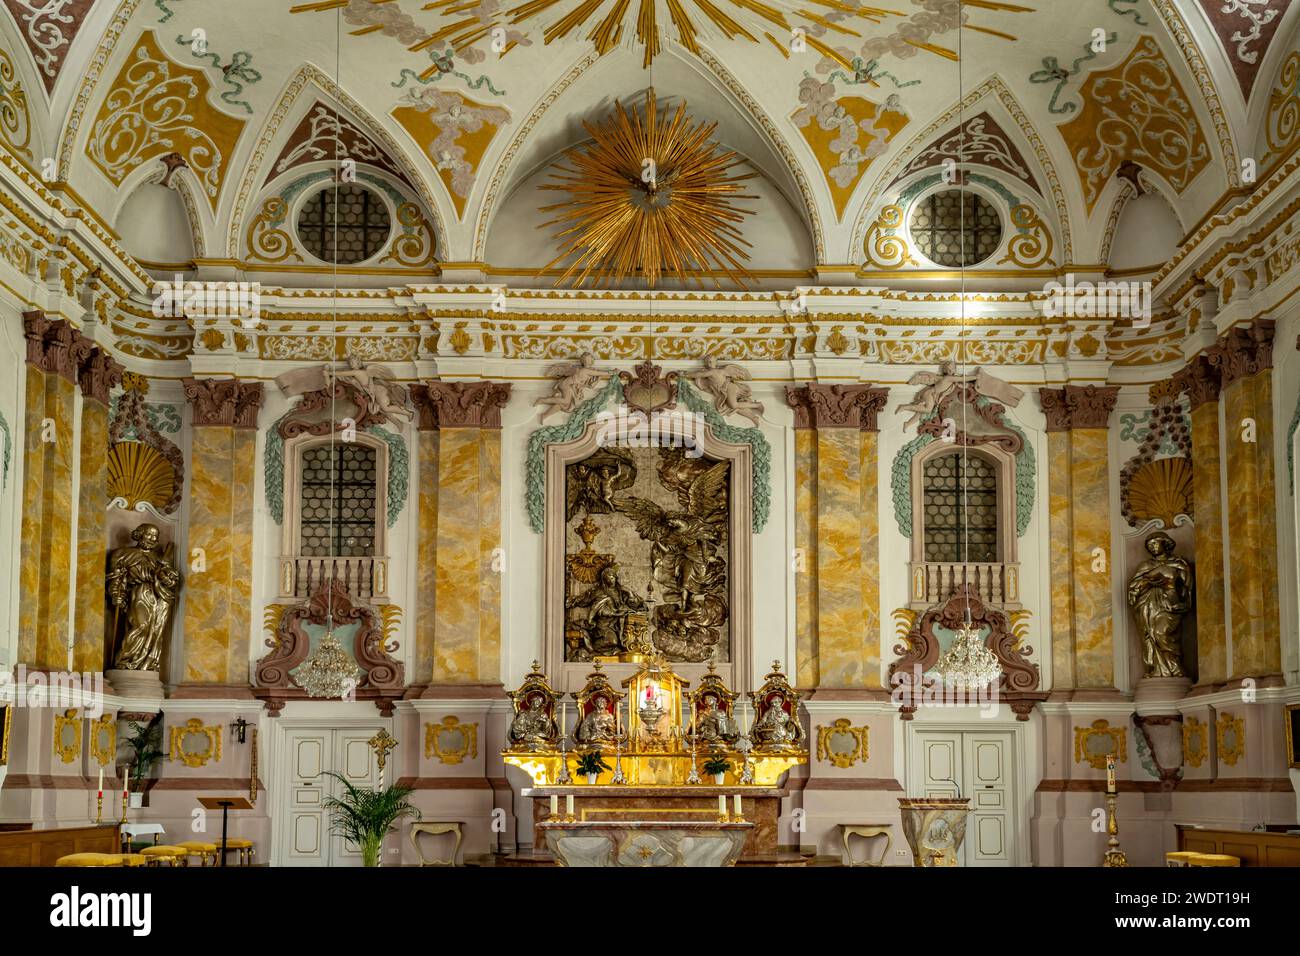 Hochalter der Oberkirche des Bürgersaal in München, Bayern, Deutschland, Europa  |  The Bürgersaal- Citizen's Hall - upper church high altar, Munich, Stock Photo